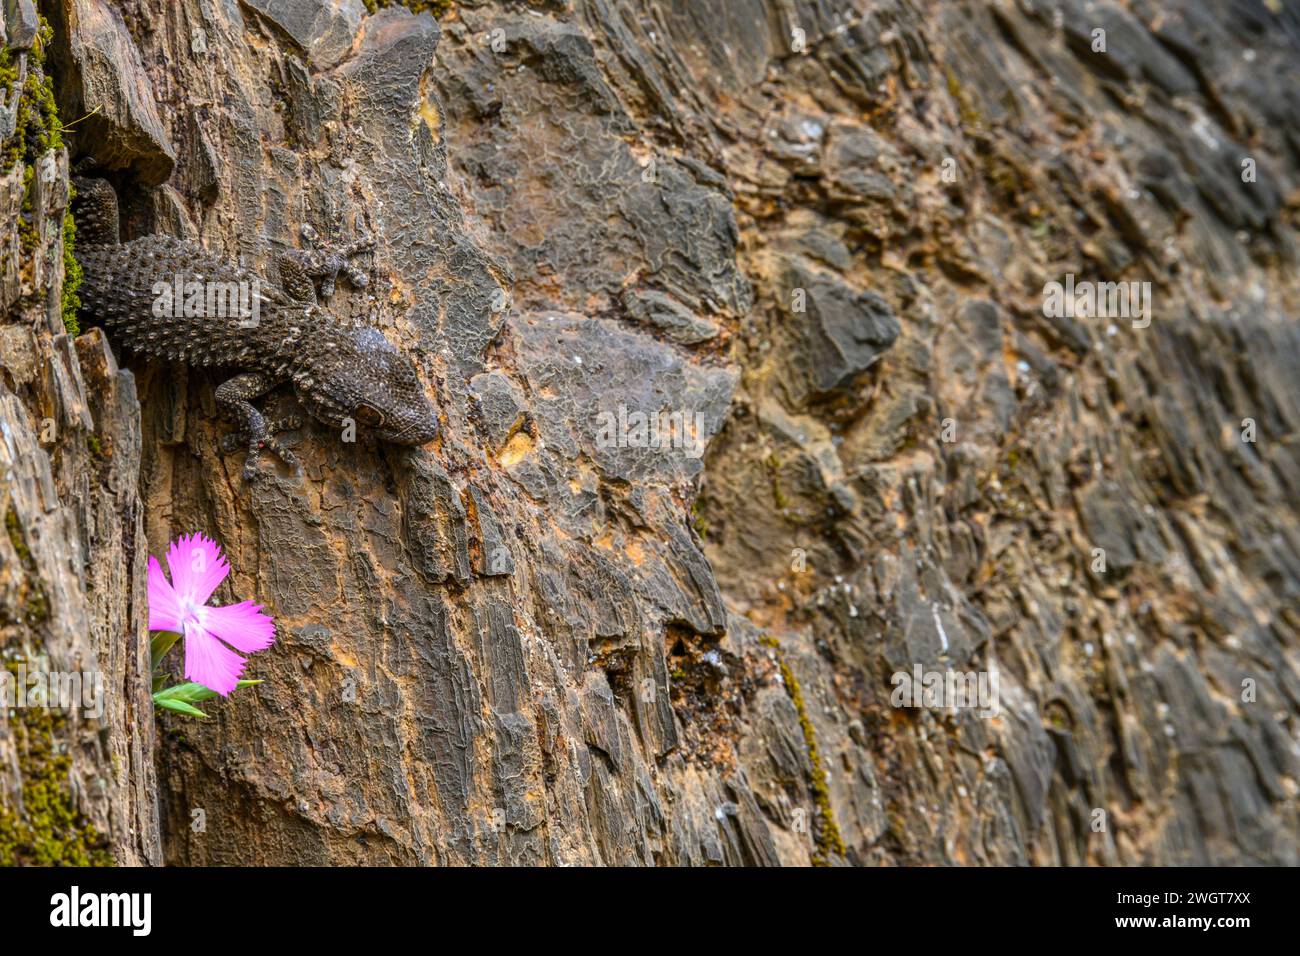 Un gecko commun fusionne avec les textures rocheuses de Rio Tinto, à côté d'une fleur rose vibrante Banque D'Images